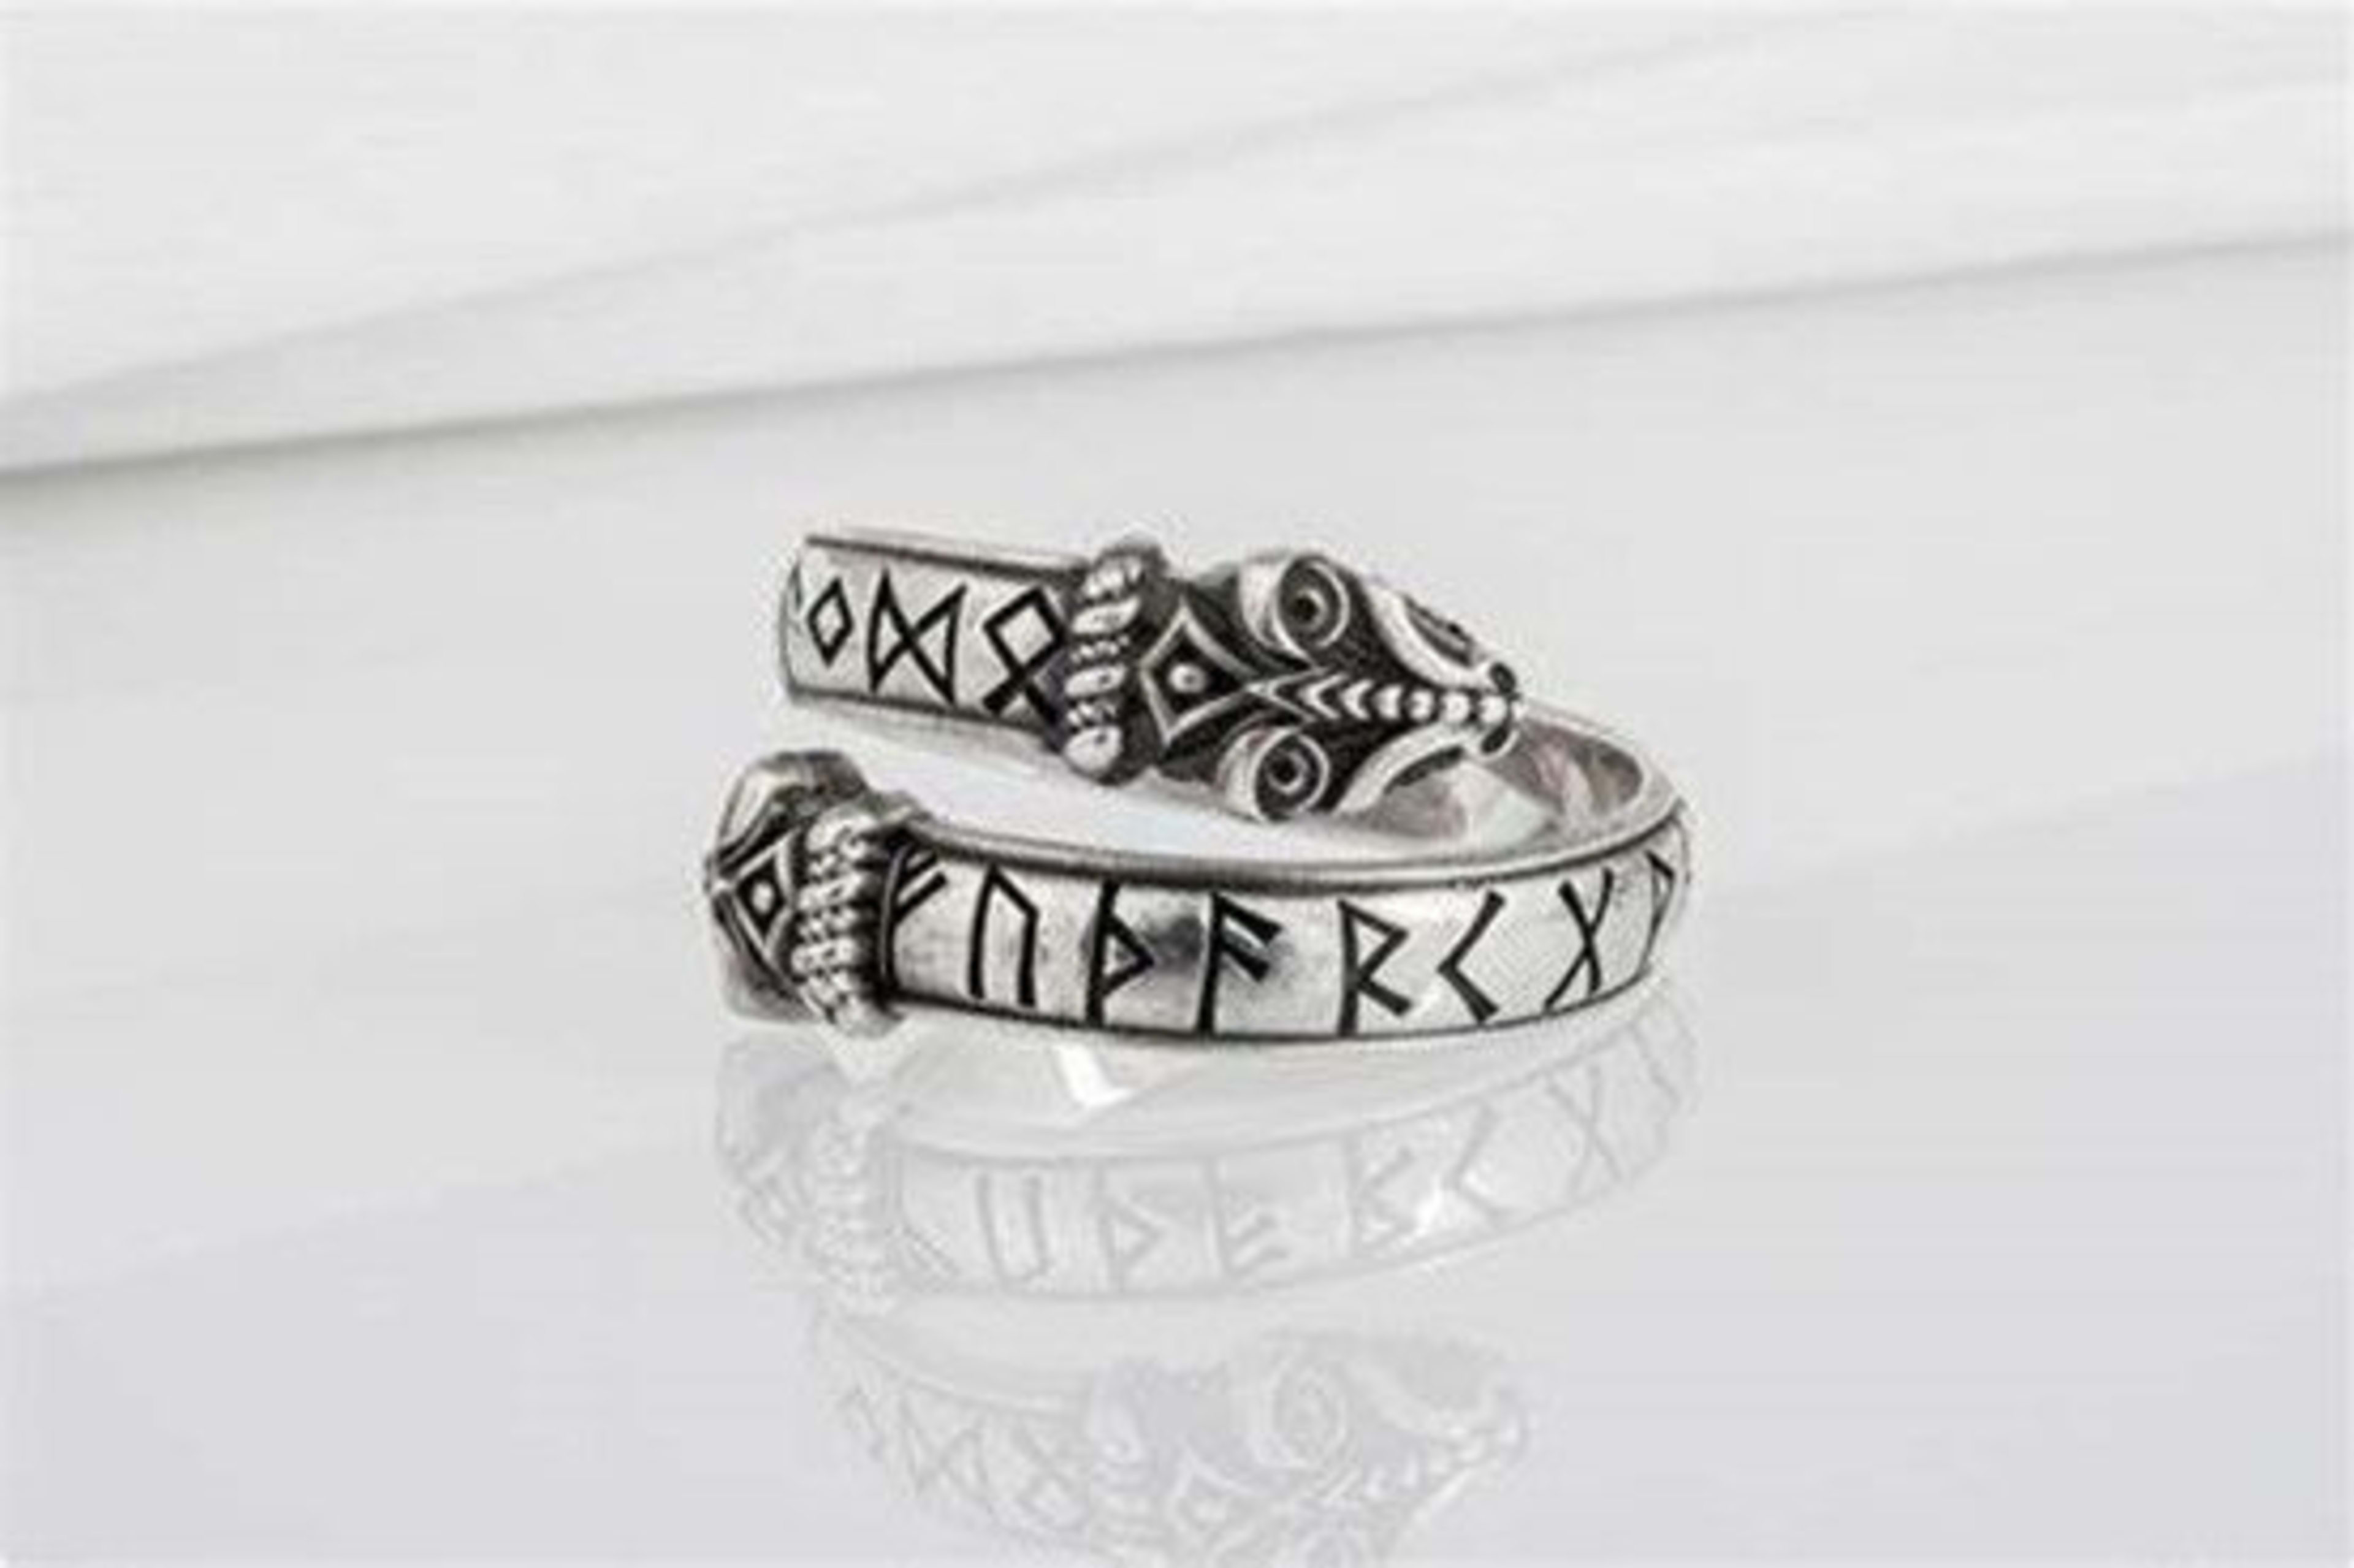 nordic runes on rings.jpg